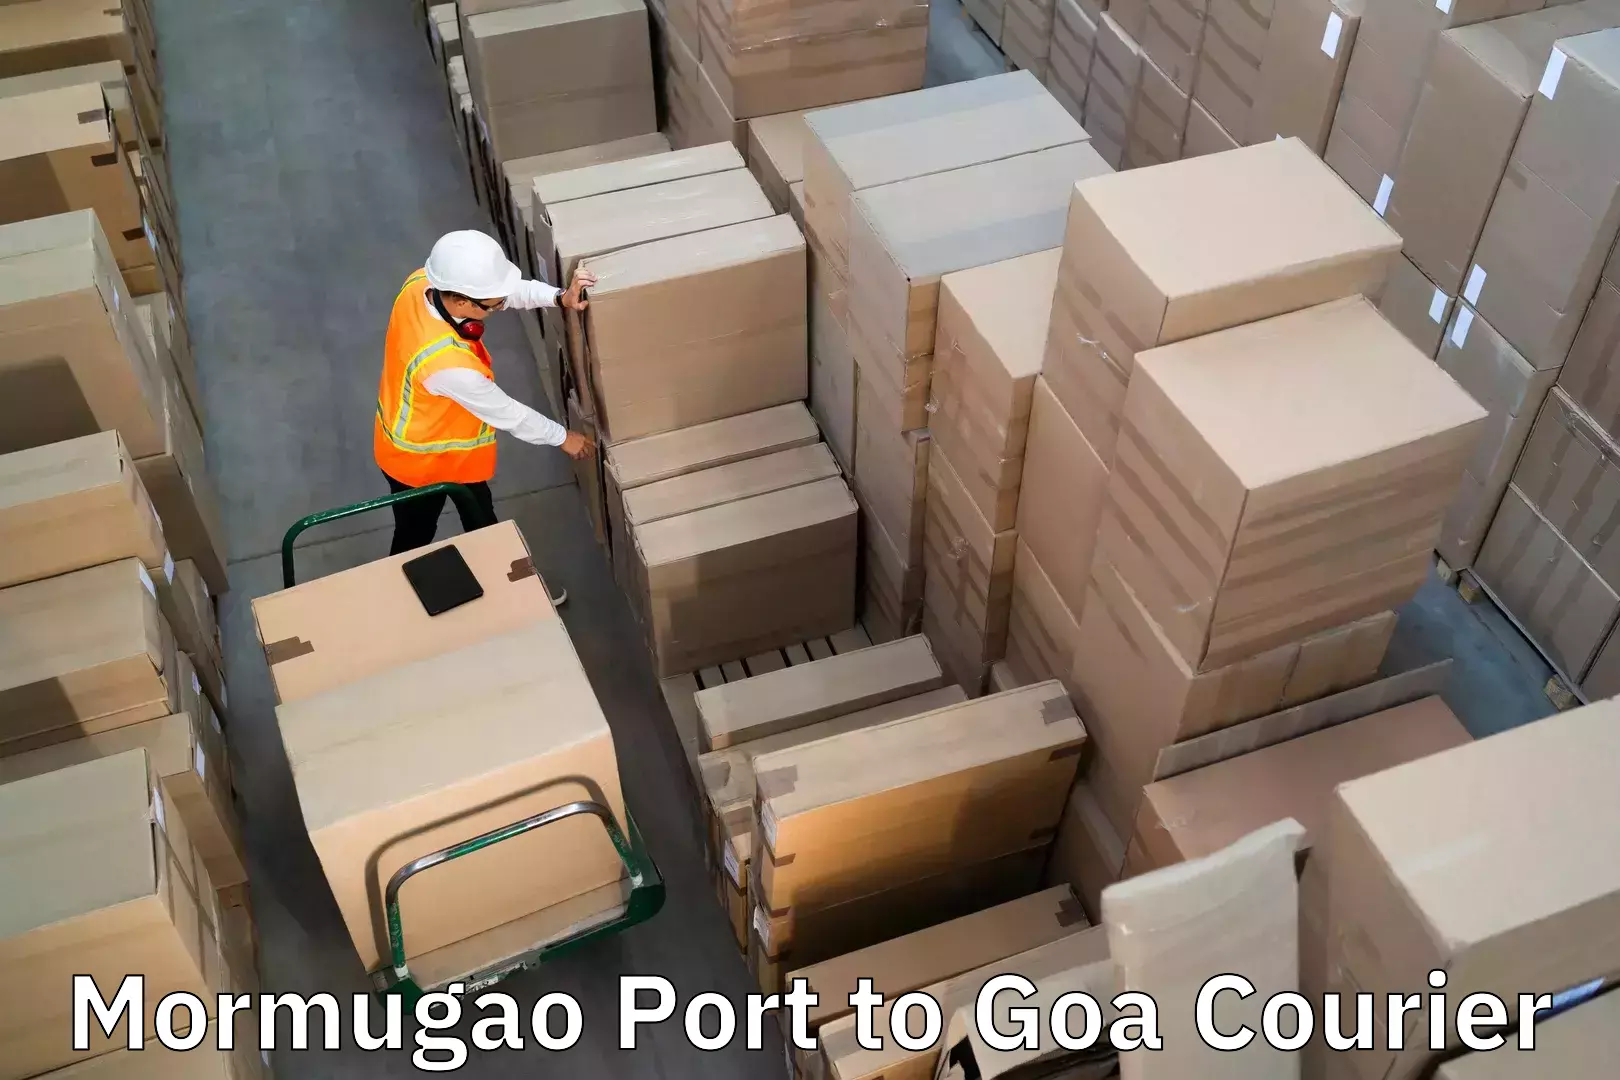 Luggage delivery estimate Mormugao Port to Goa